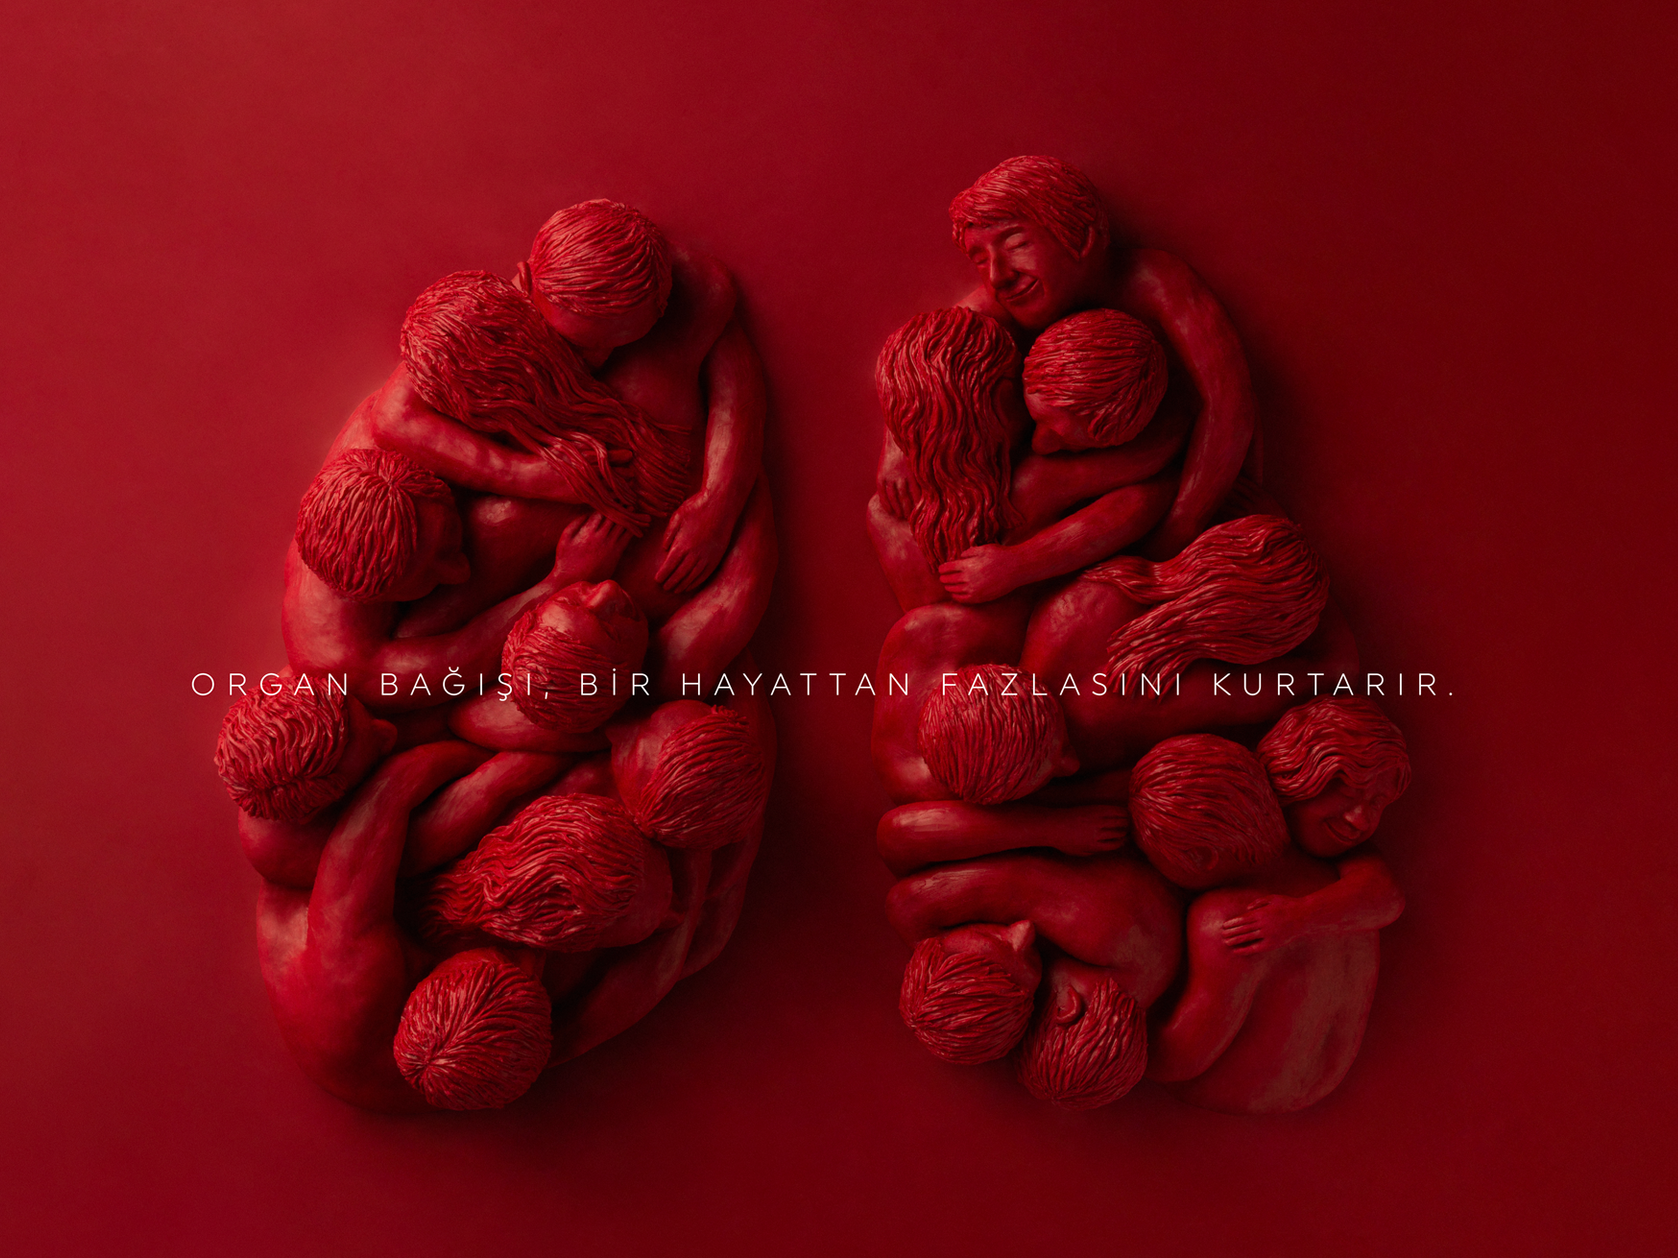 视觉冲击型海报：器官捐赠拯救的不仅仅是一条生命